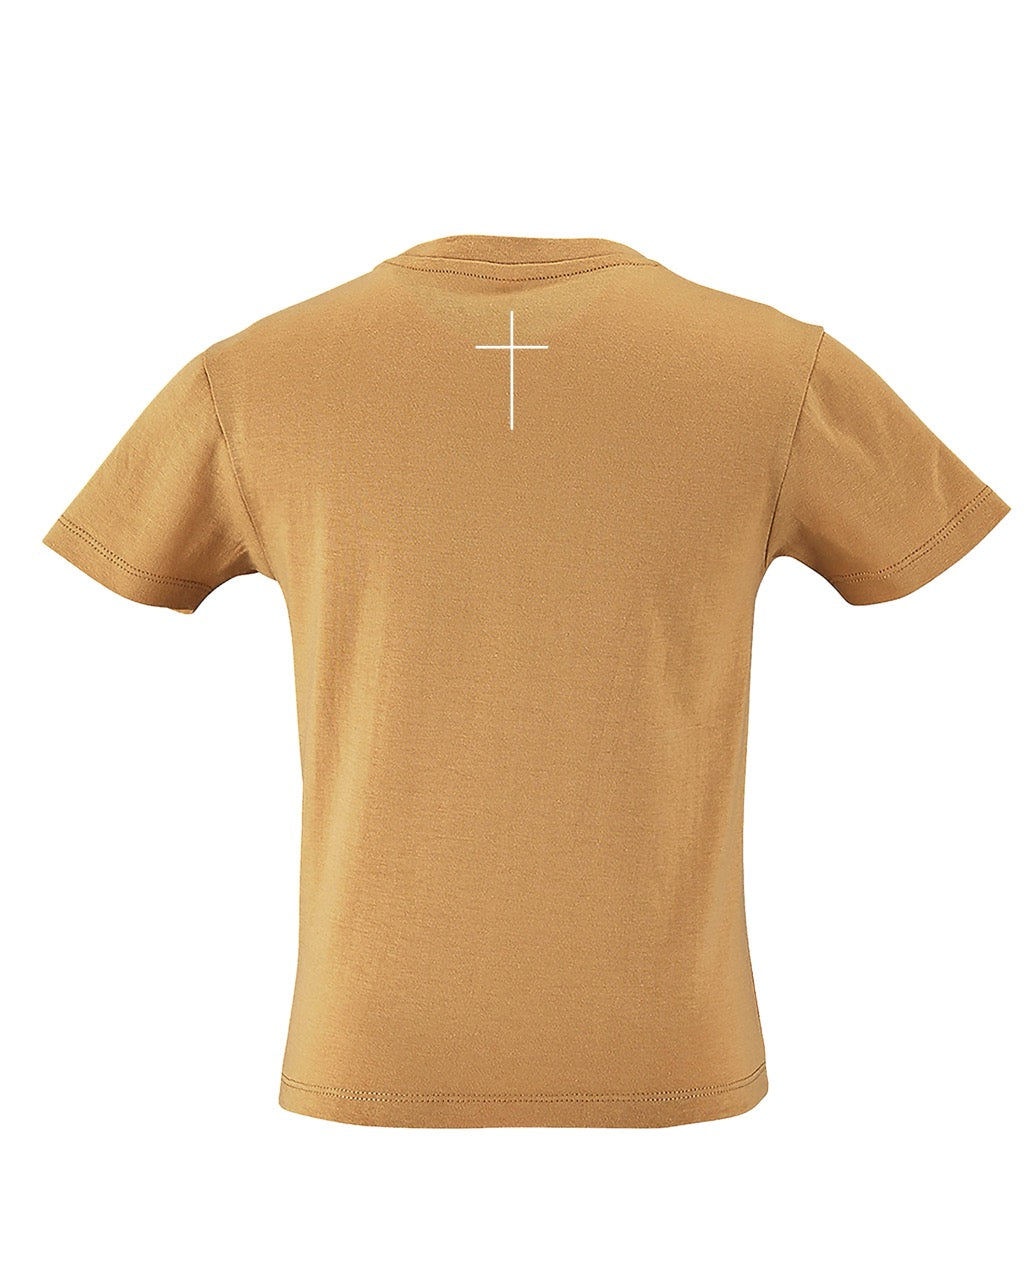 Kinder T-Shirt - "Christ"